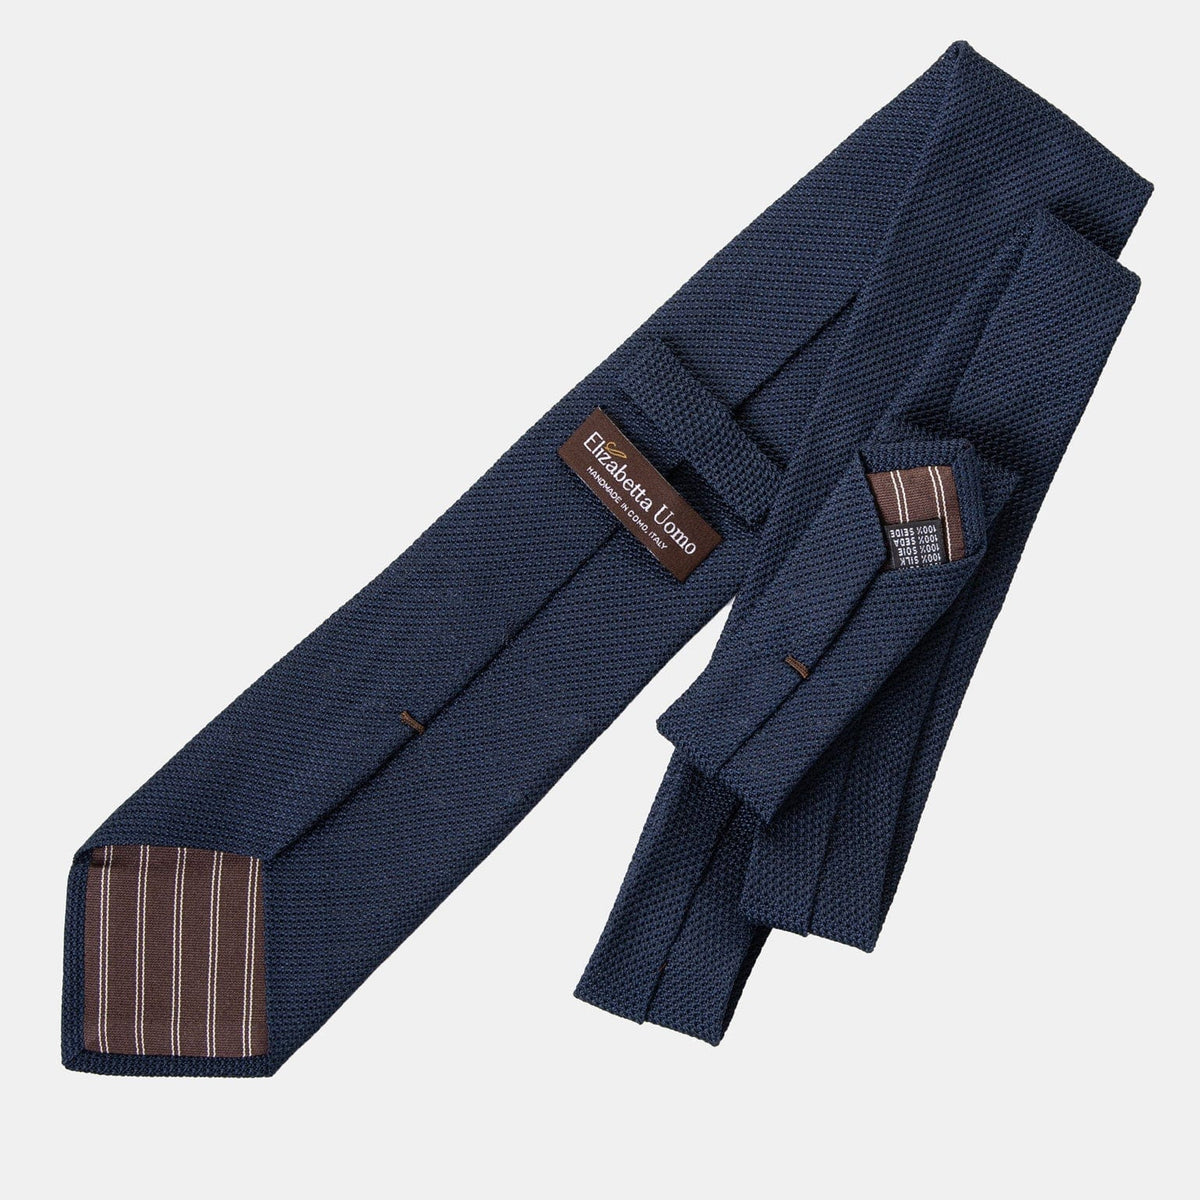 Dark Navy Grenadine Tie - 100% Silk Made in Italy